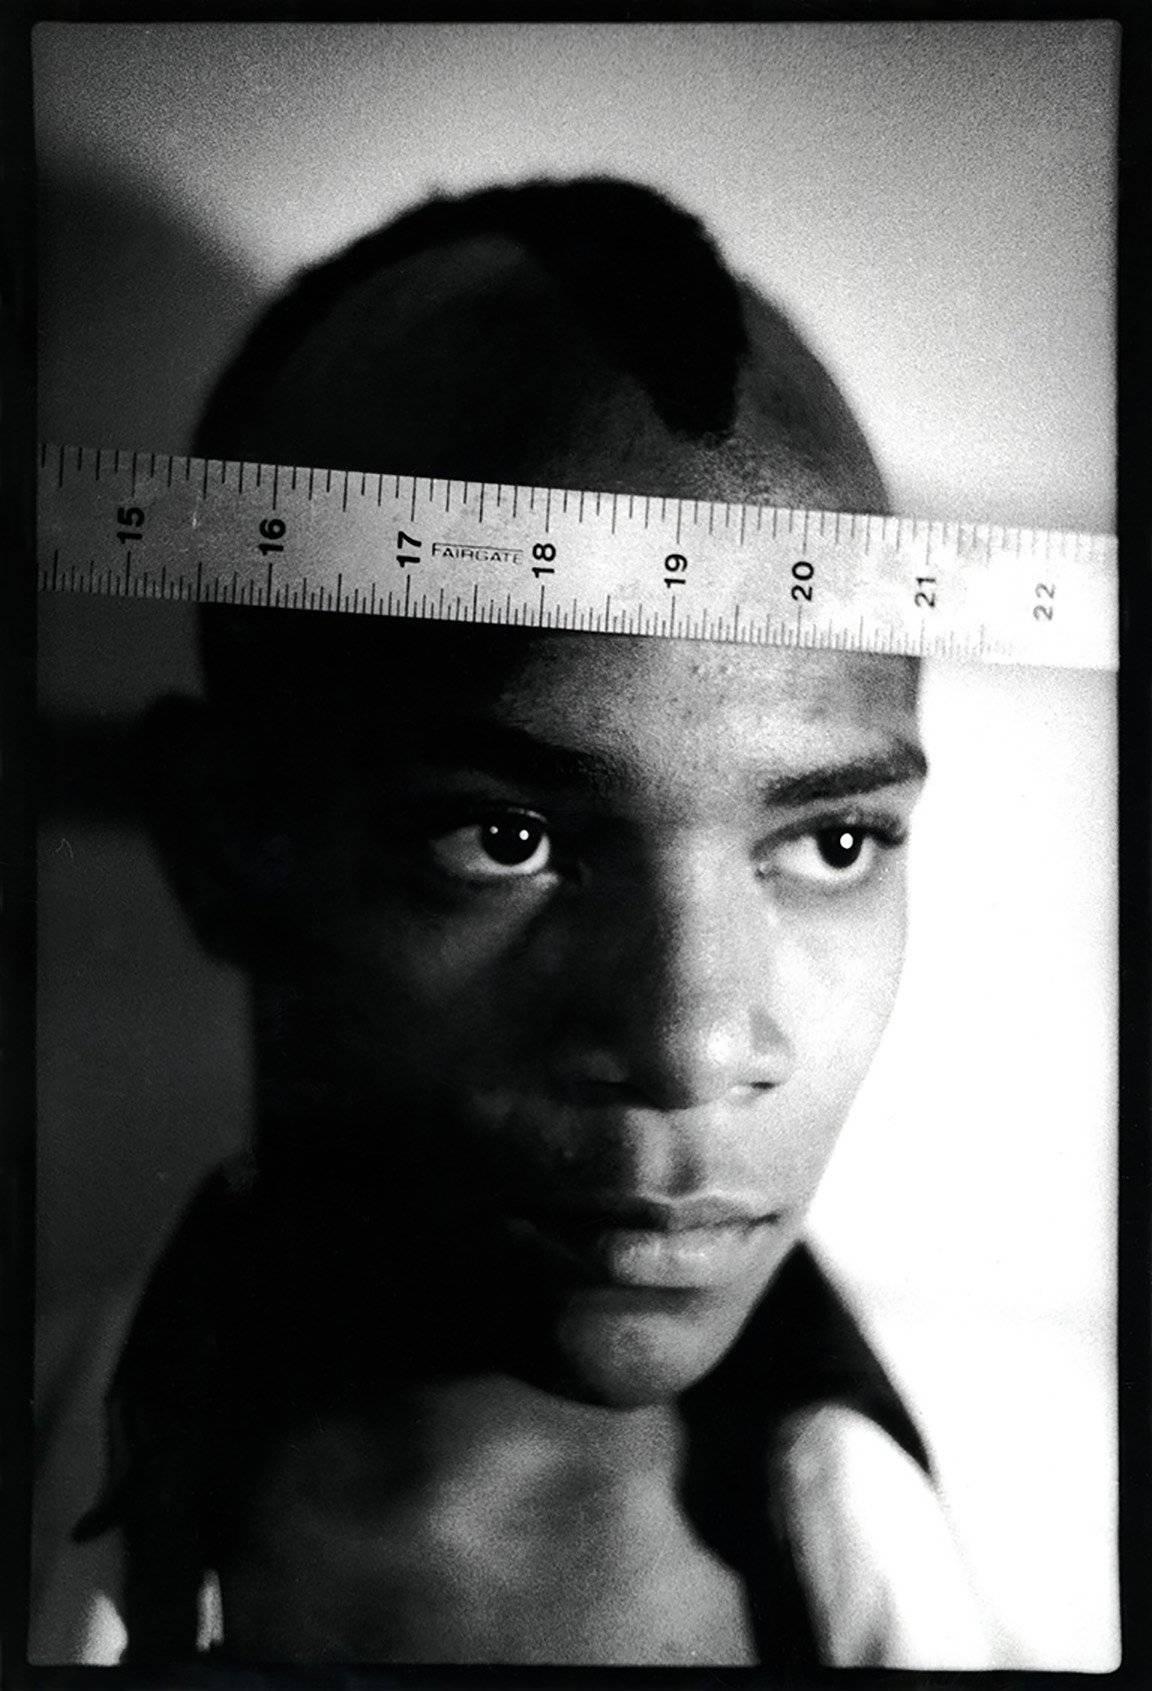 Nicholas Taylor Portrait Photograph - Basquiat 1979 photograph (Nick Taylor Jean-Michel Basquiat Gray)